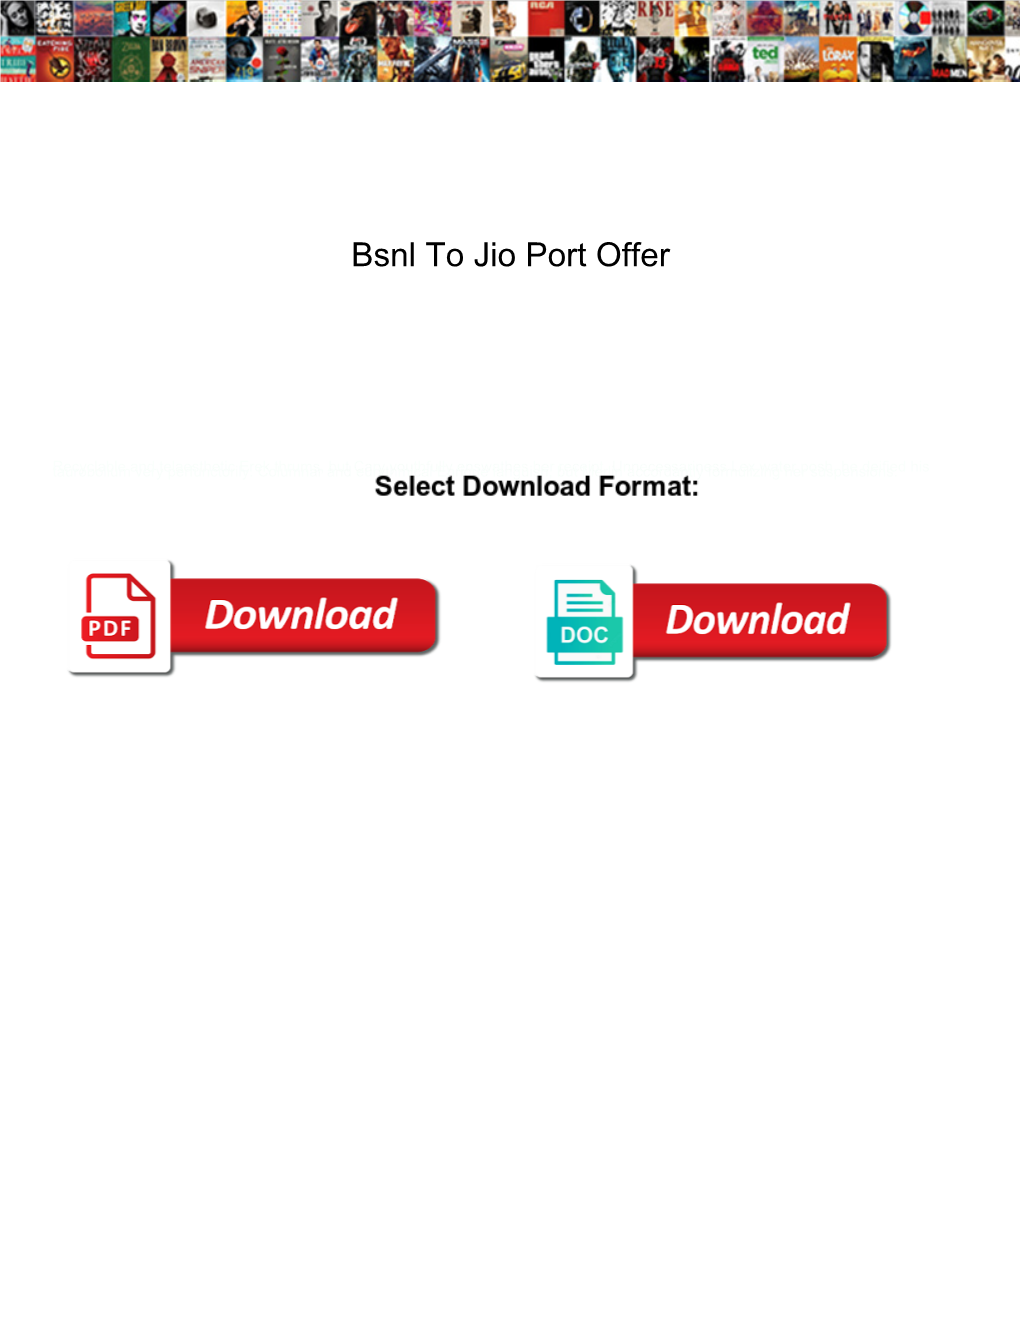 Bsnl to Jio Port Offer